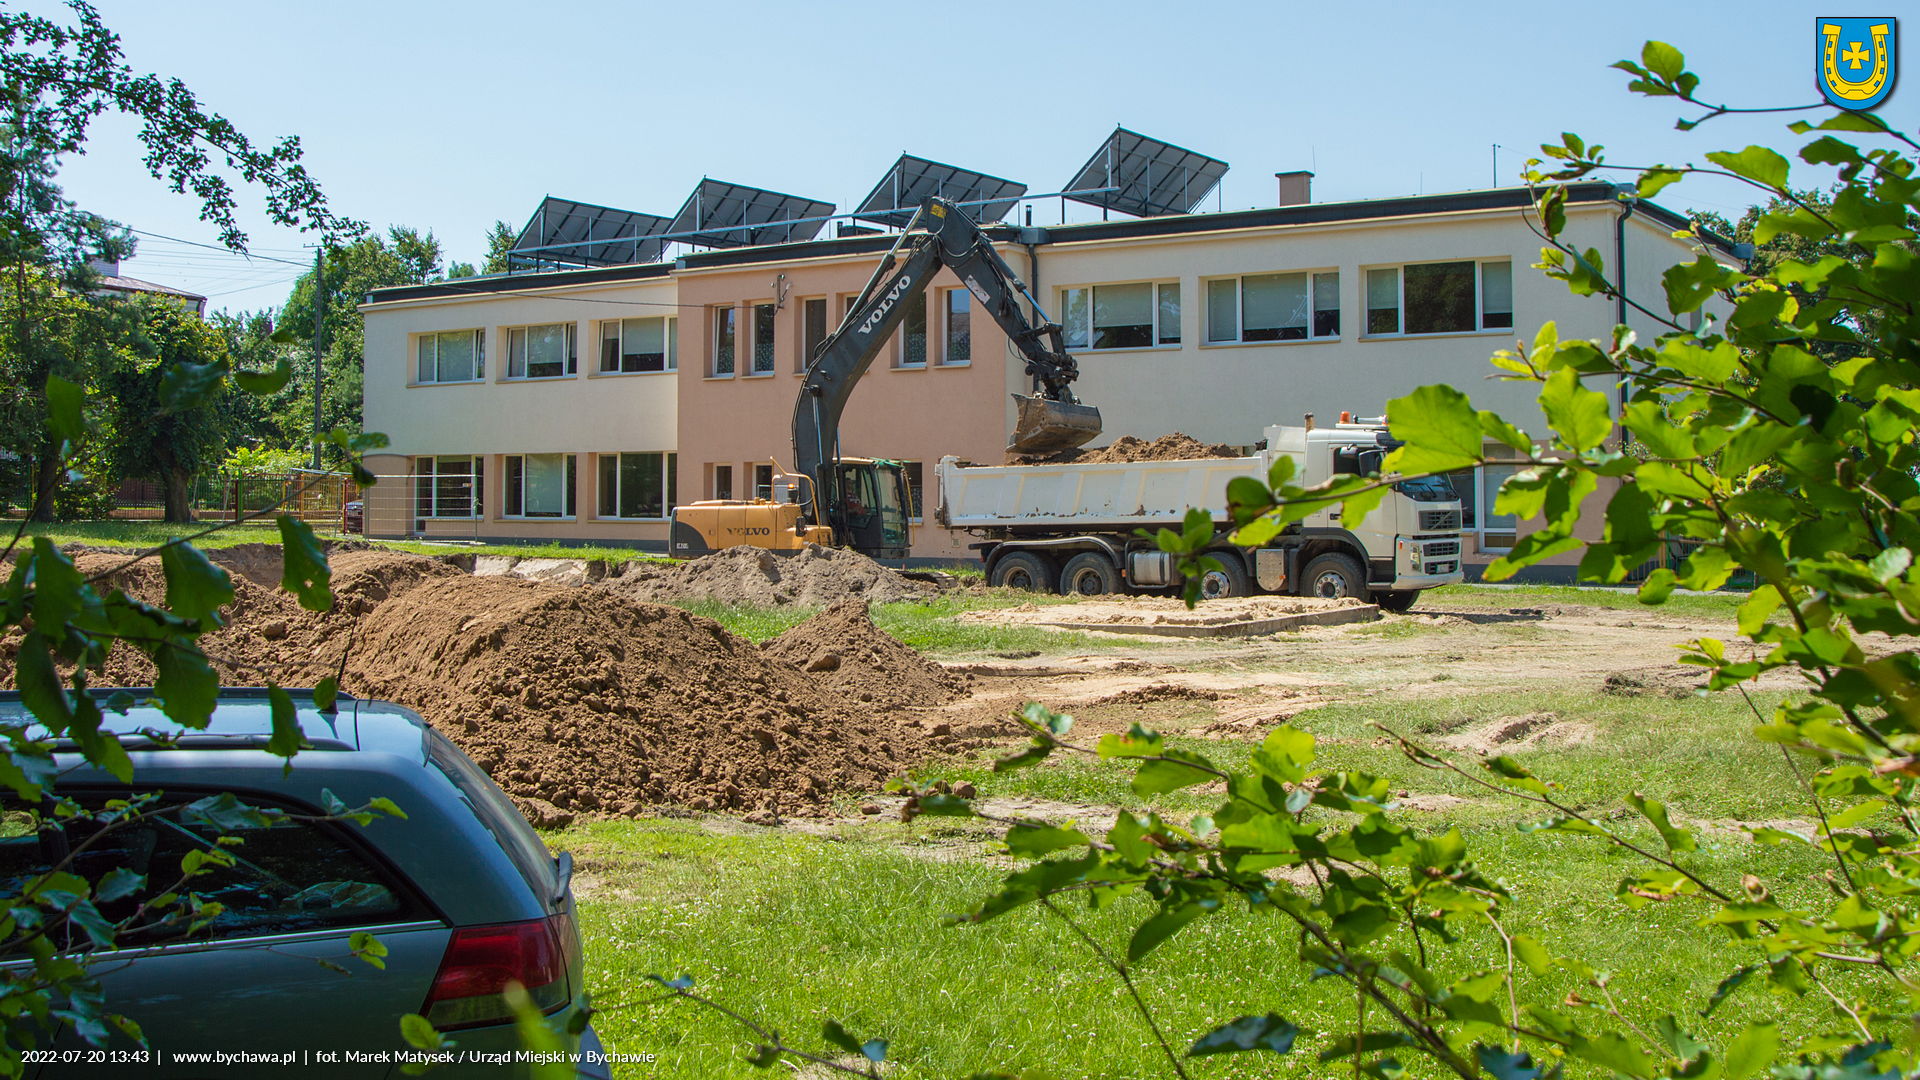 Ruszyły prace budowlane nad rozbudową przedszkola w Bychawie o skrzydło w którym powstanie żłobek